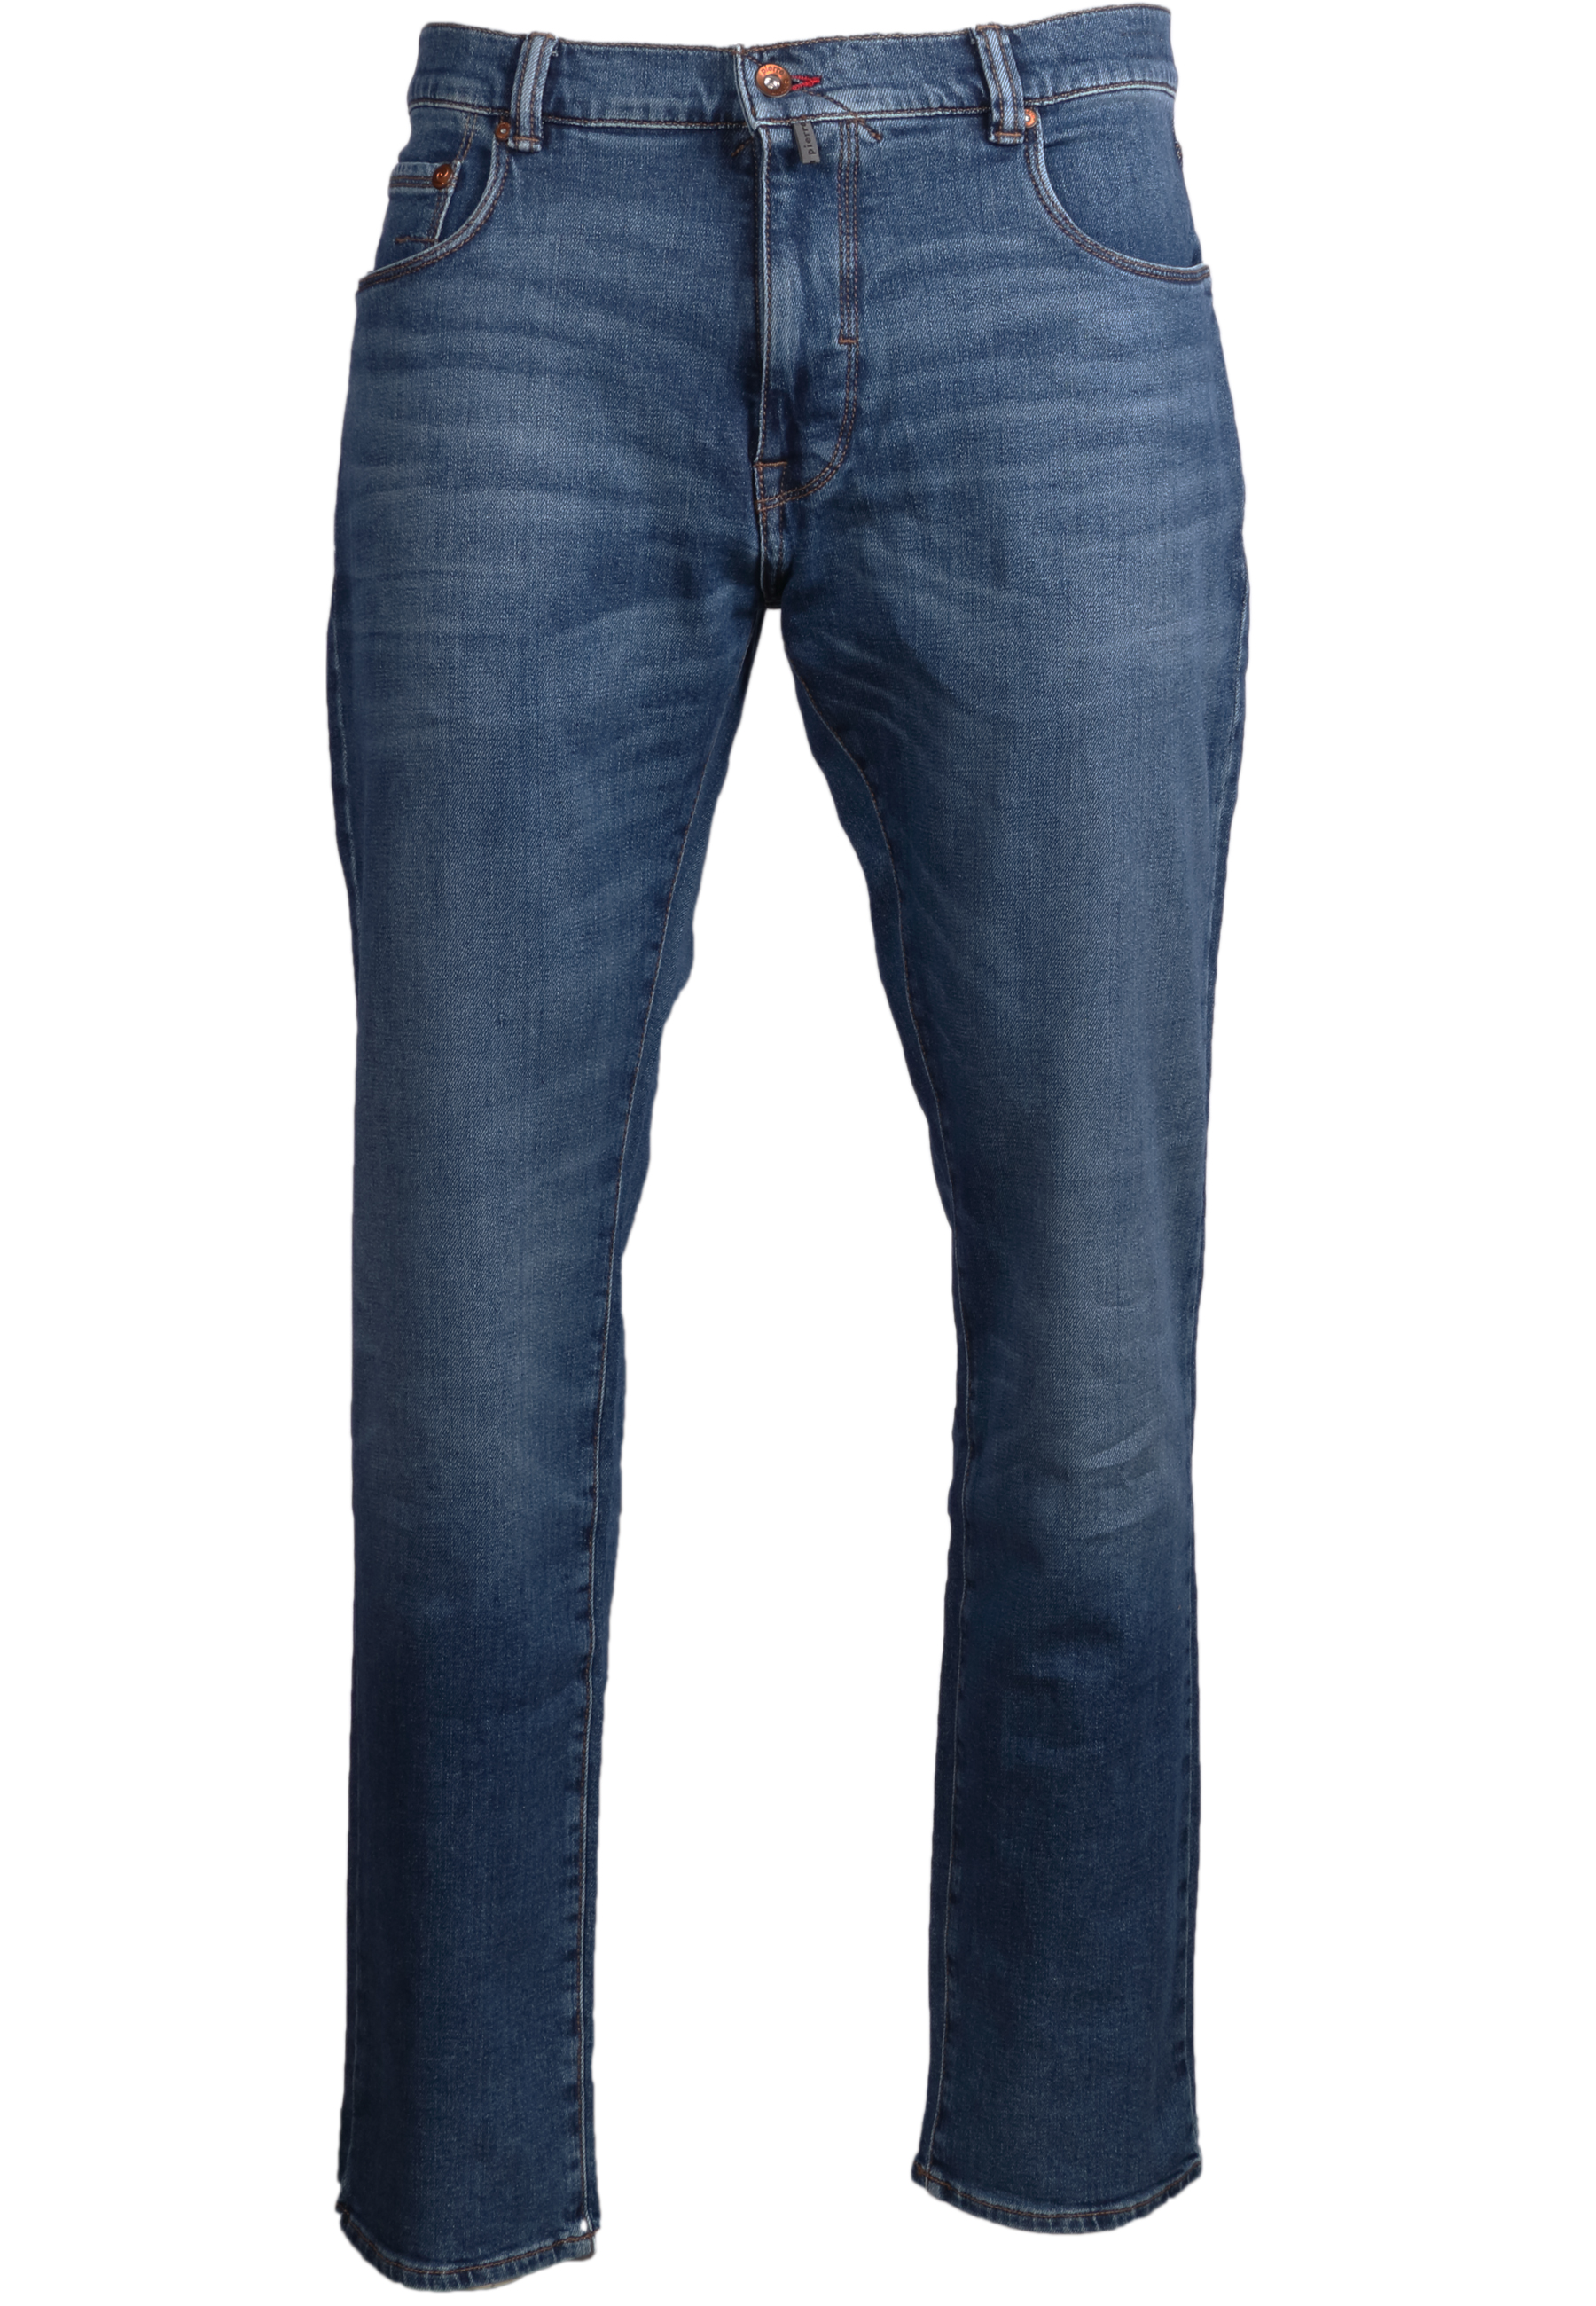 Pierre Cardin Herren Jeans Lyon tapered - blue used 35/32